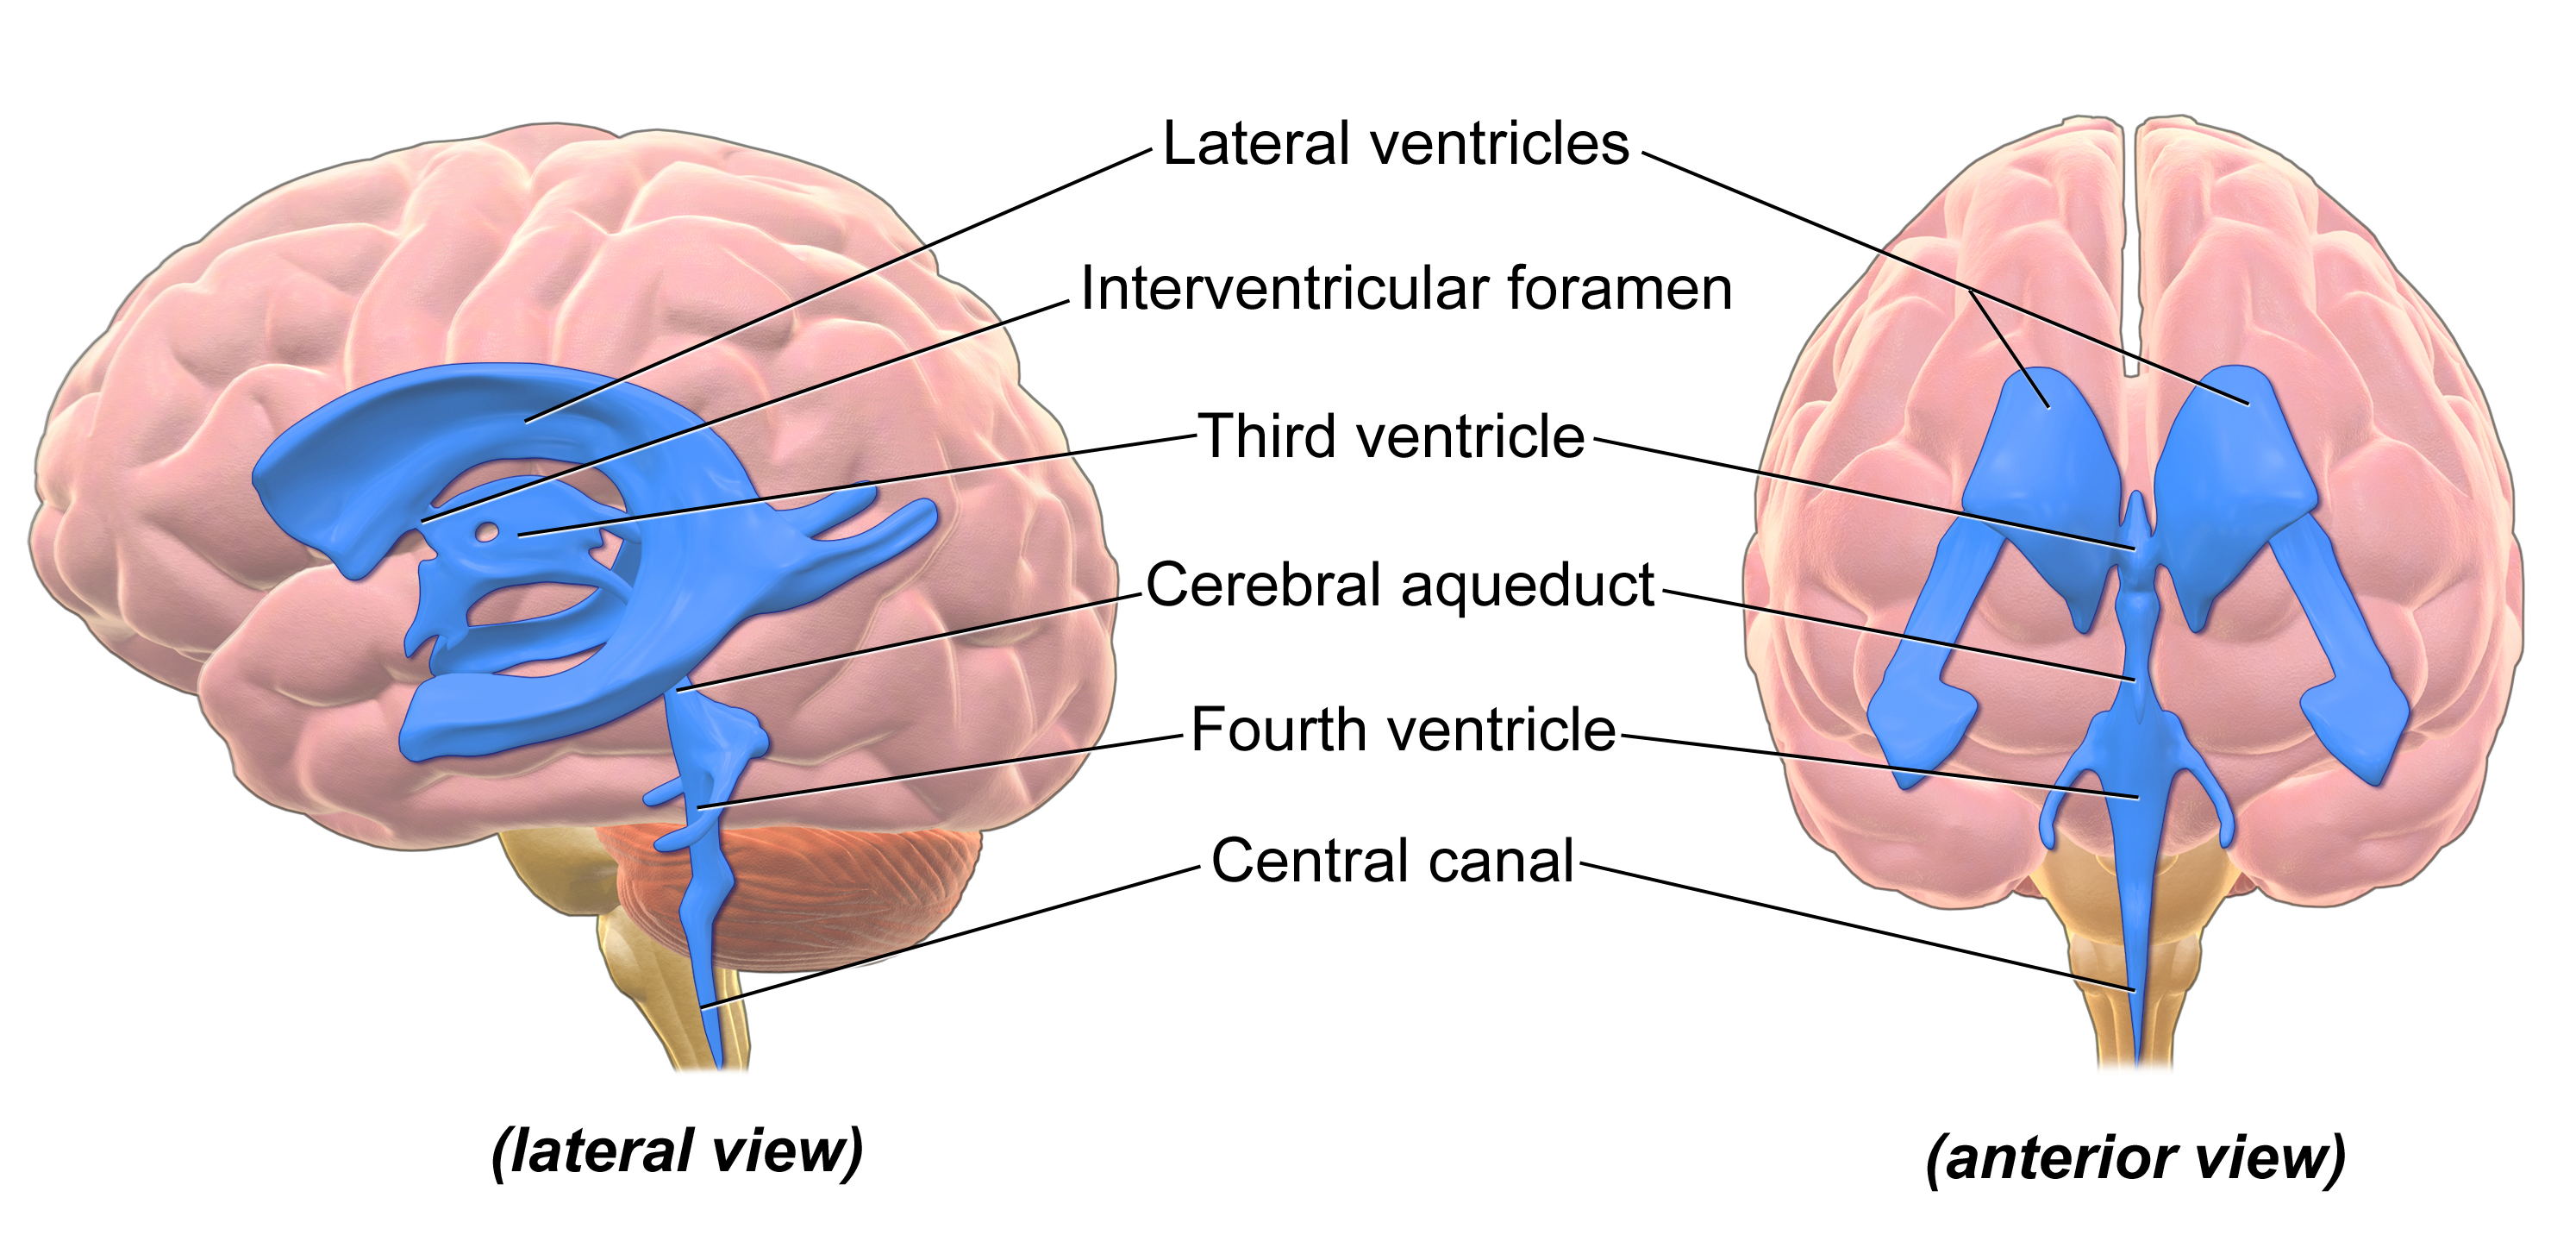 Vista lateral y anterior de los ventrículos representados por regiones azules dentro del cerebro